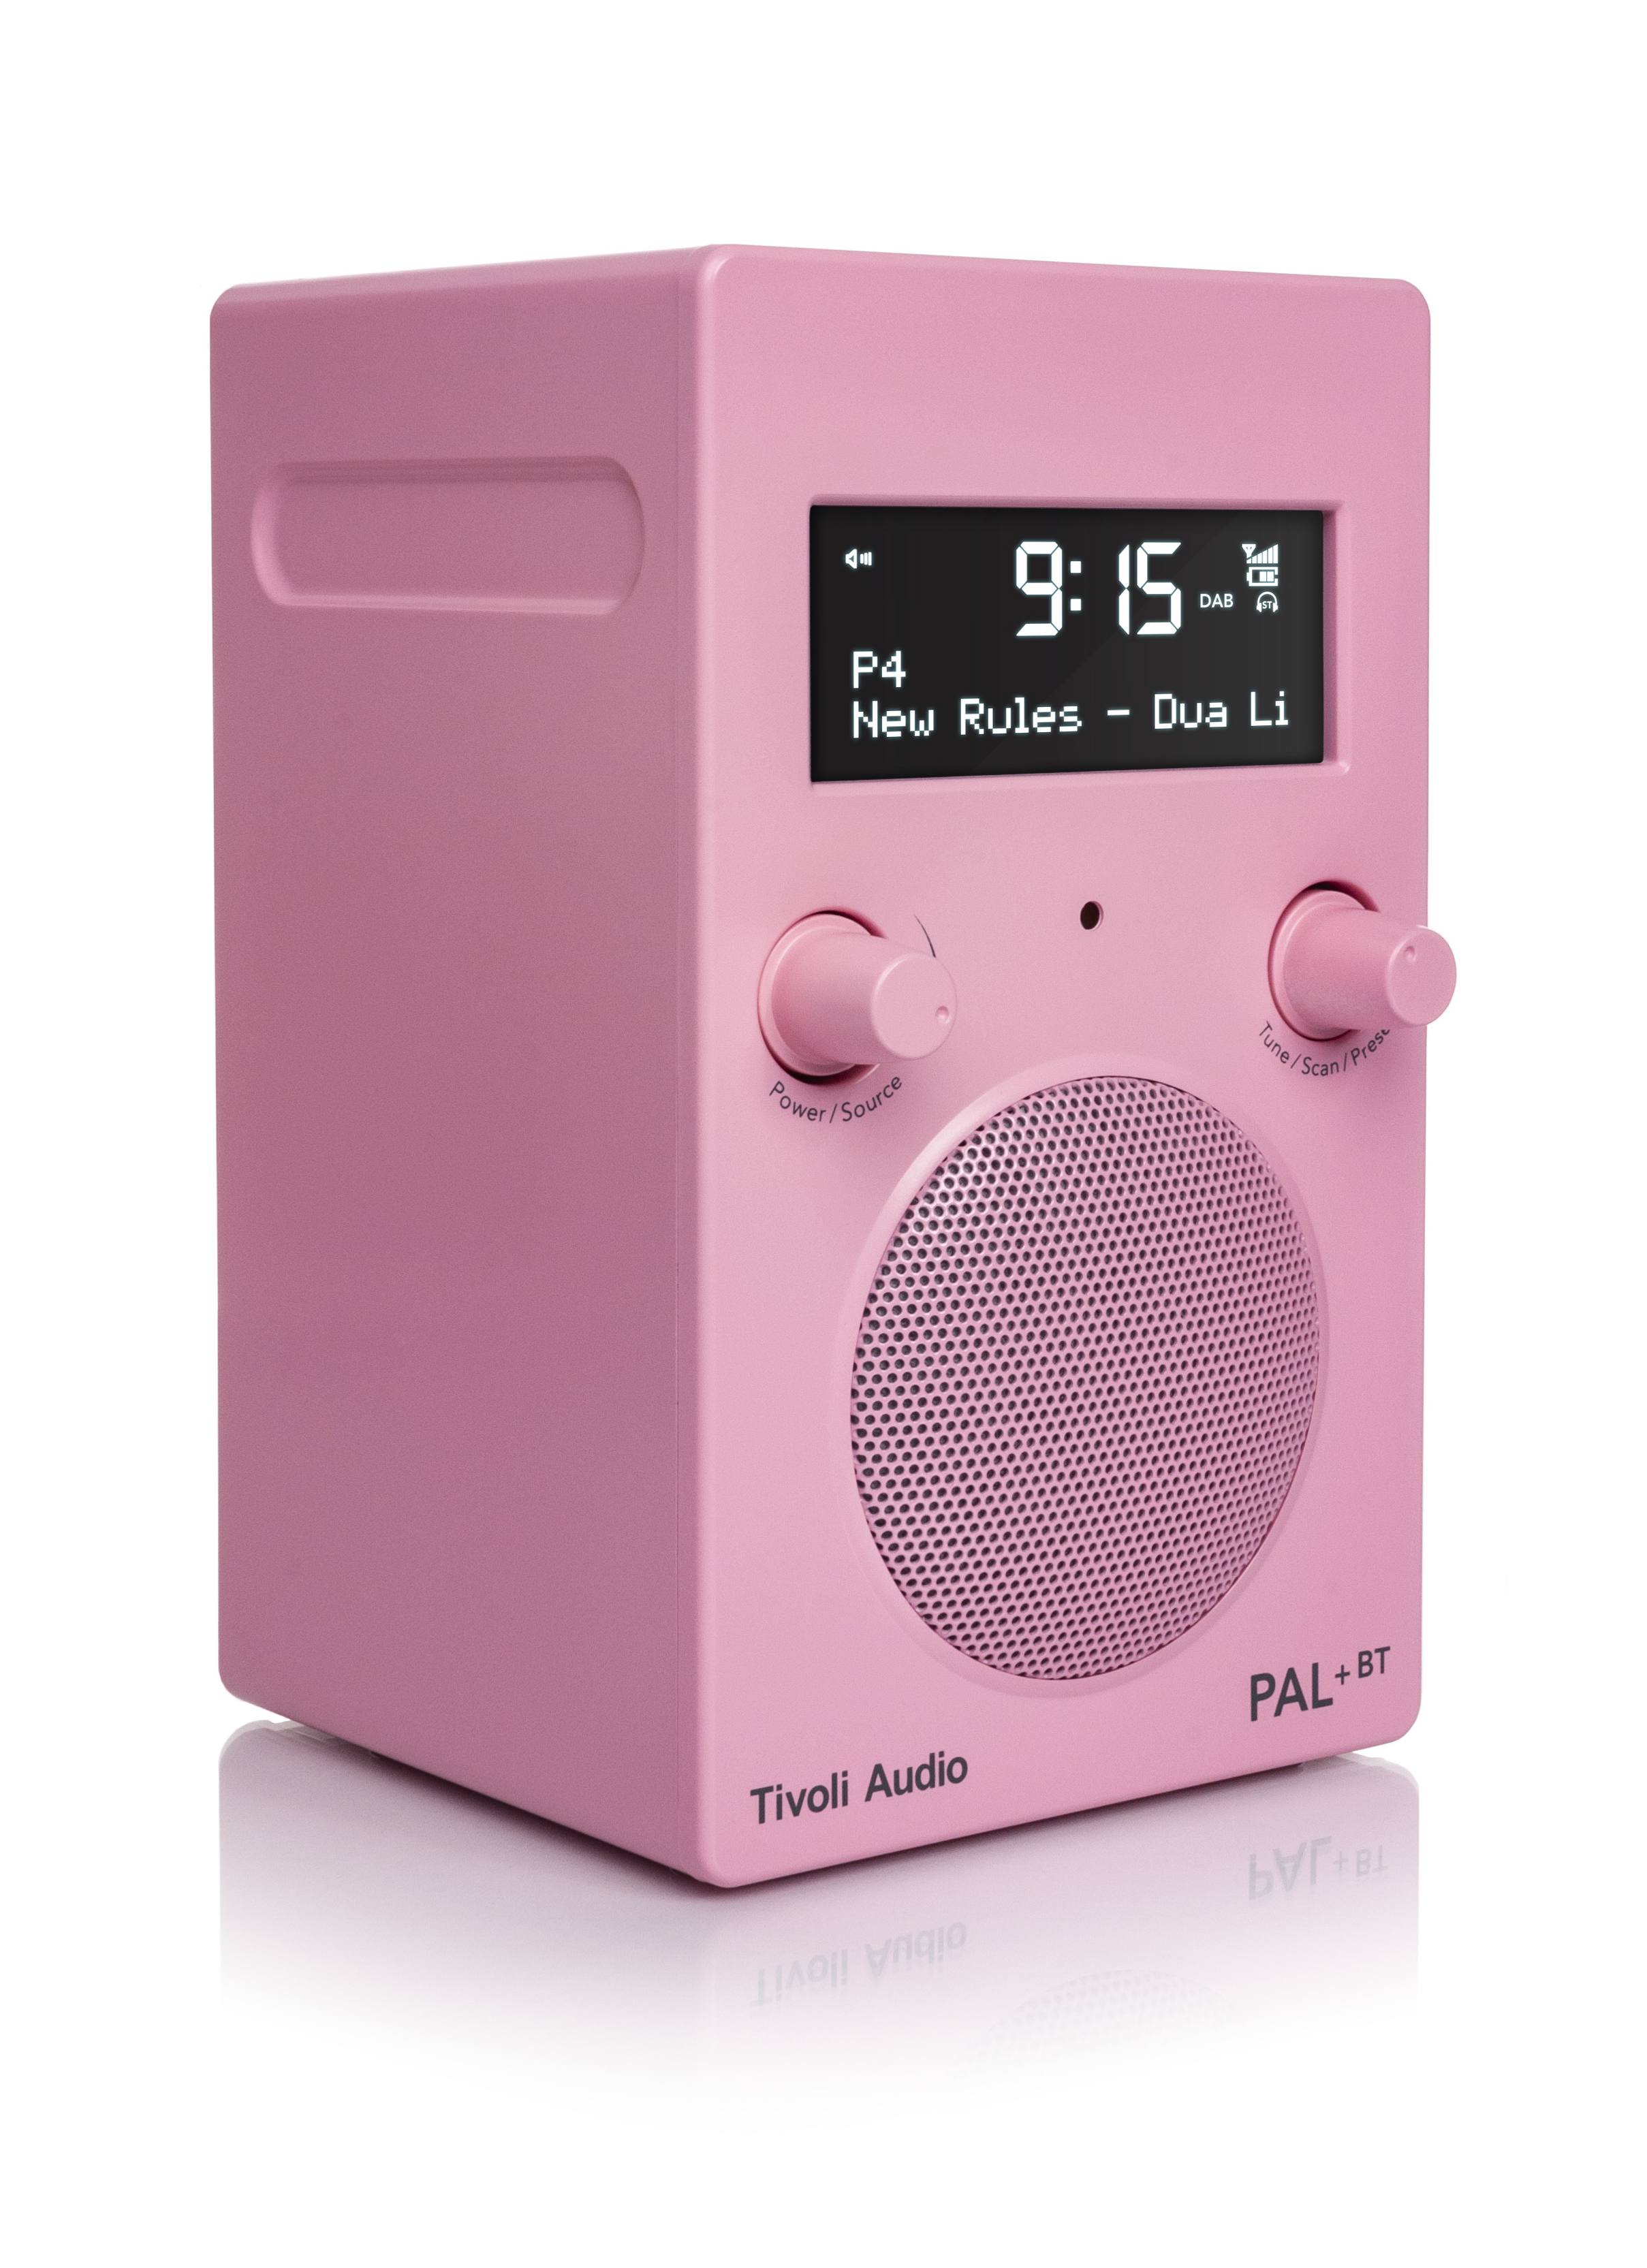 TIVOLI AUDIO PAL+ BT DAB+, Radio, Rosa DAB+ FM, Bluetooth, DAB